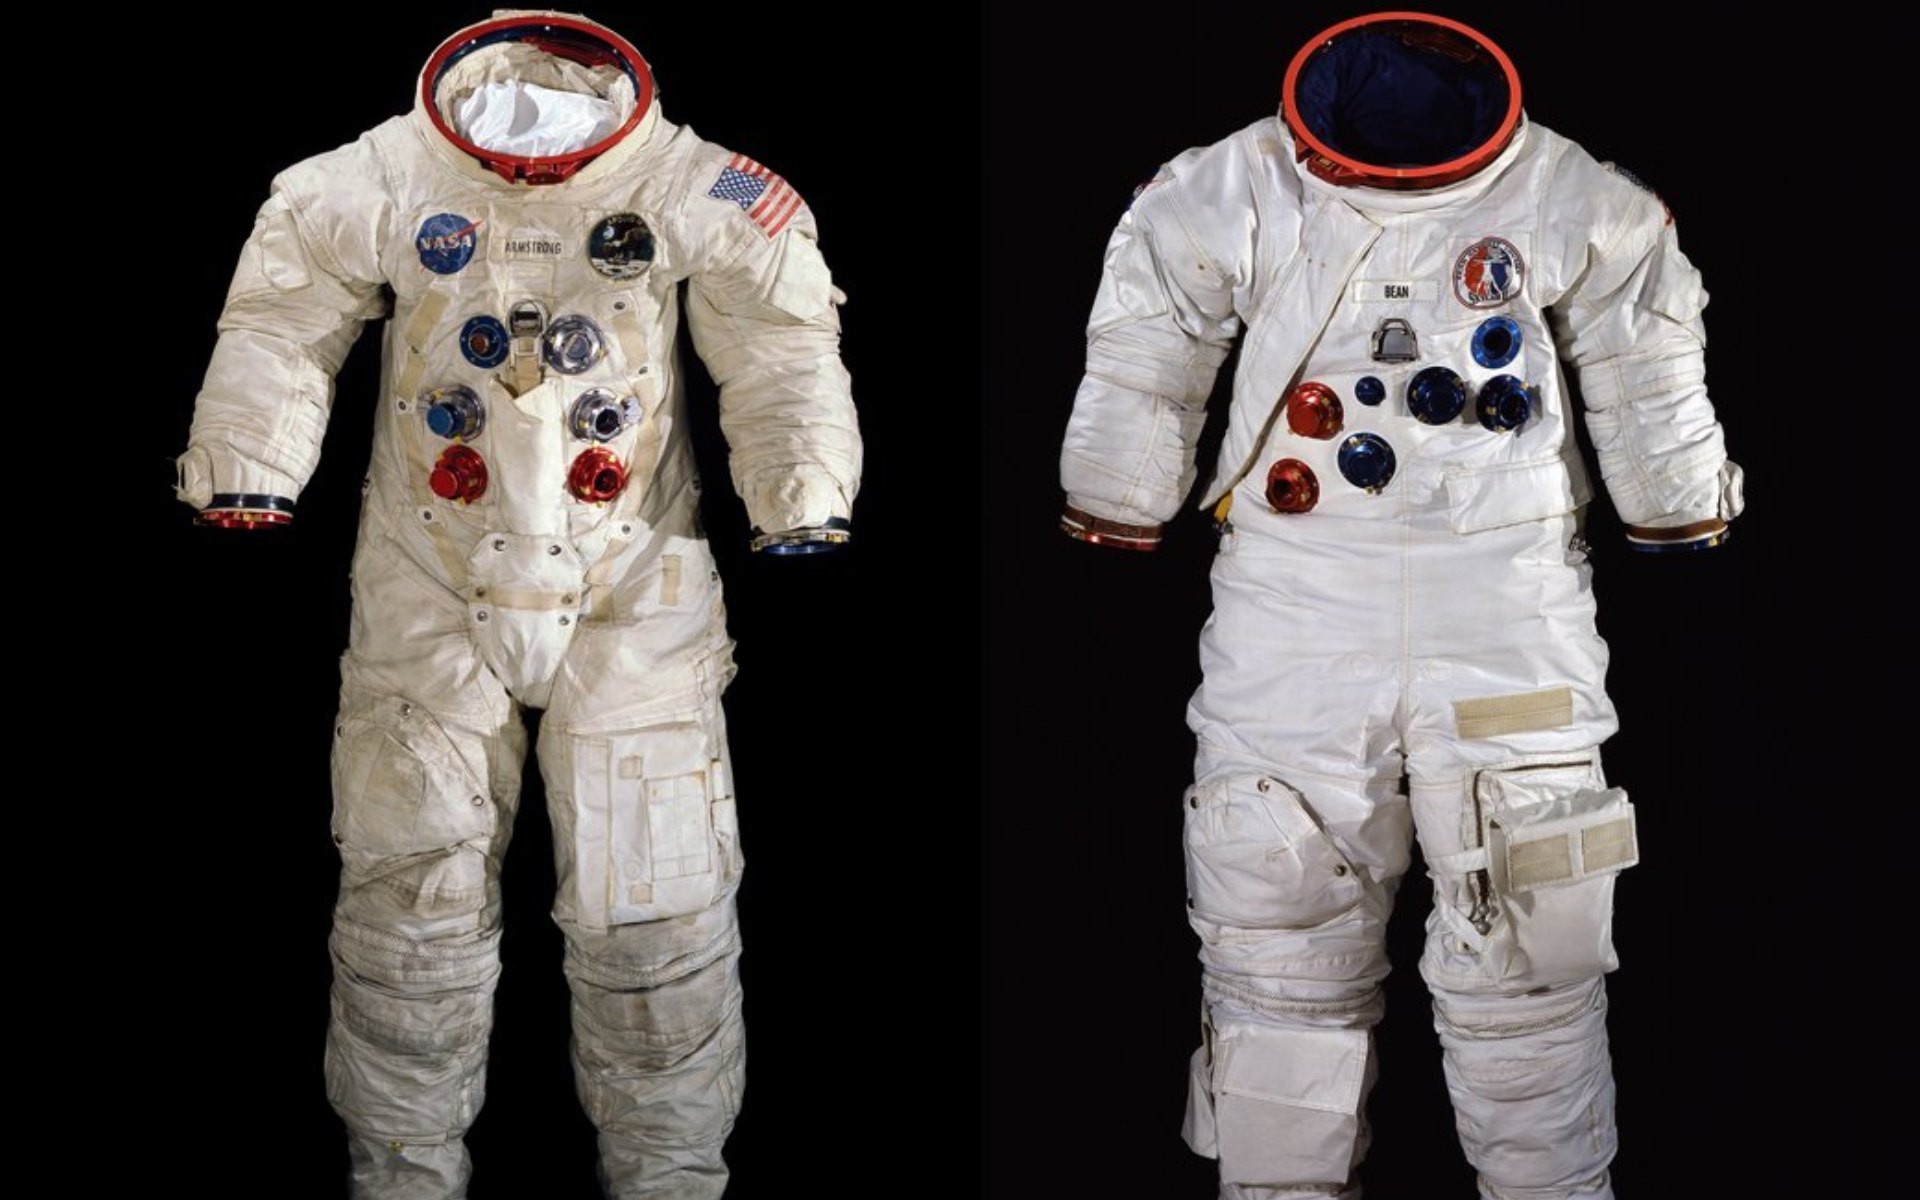 Со скафандром. Скафандр Космонавта НАСА. Костюм астронавта NASA 134-146. Костюмы астронавтов Аполлон 11. Скафандр Аполлон 11.